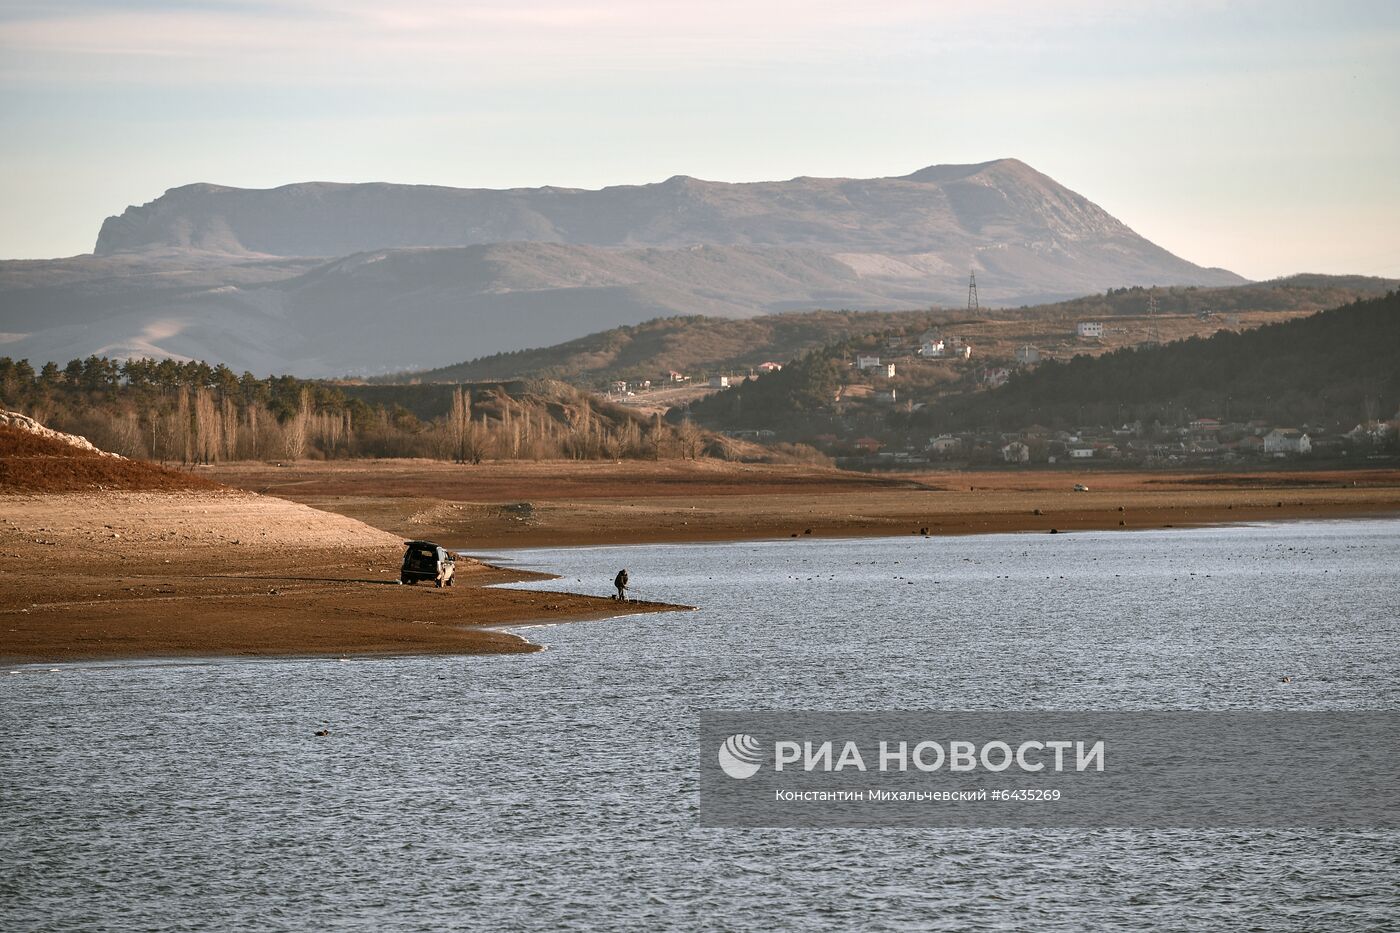 Симферопольское и Аянское водохранилища в Крыму